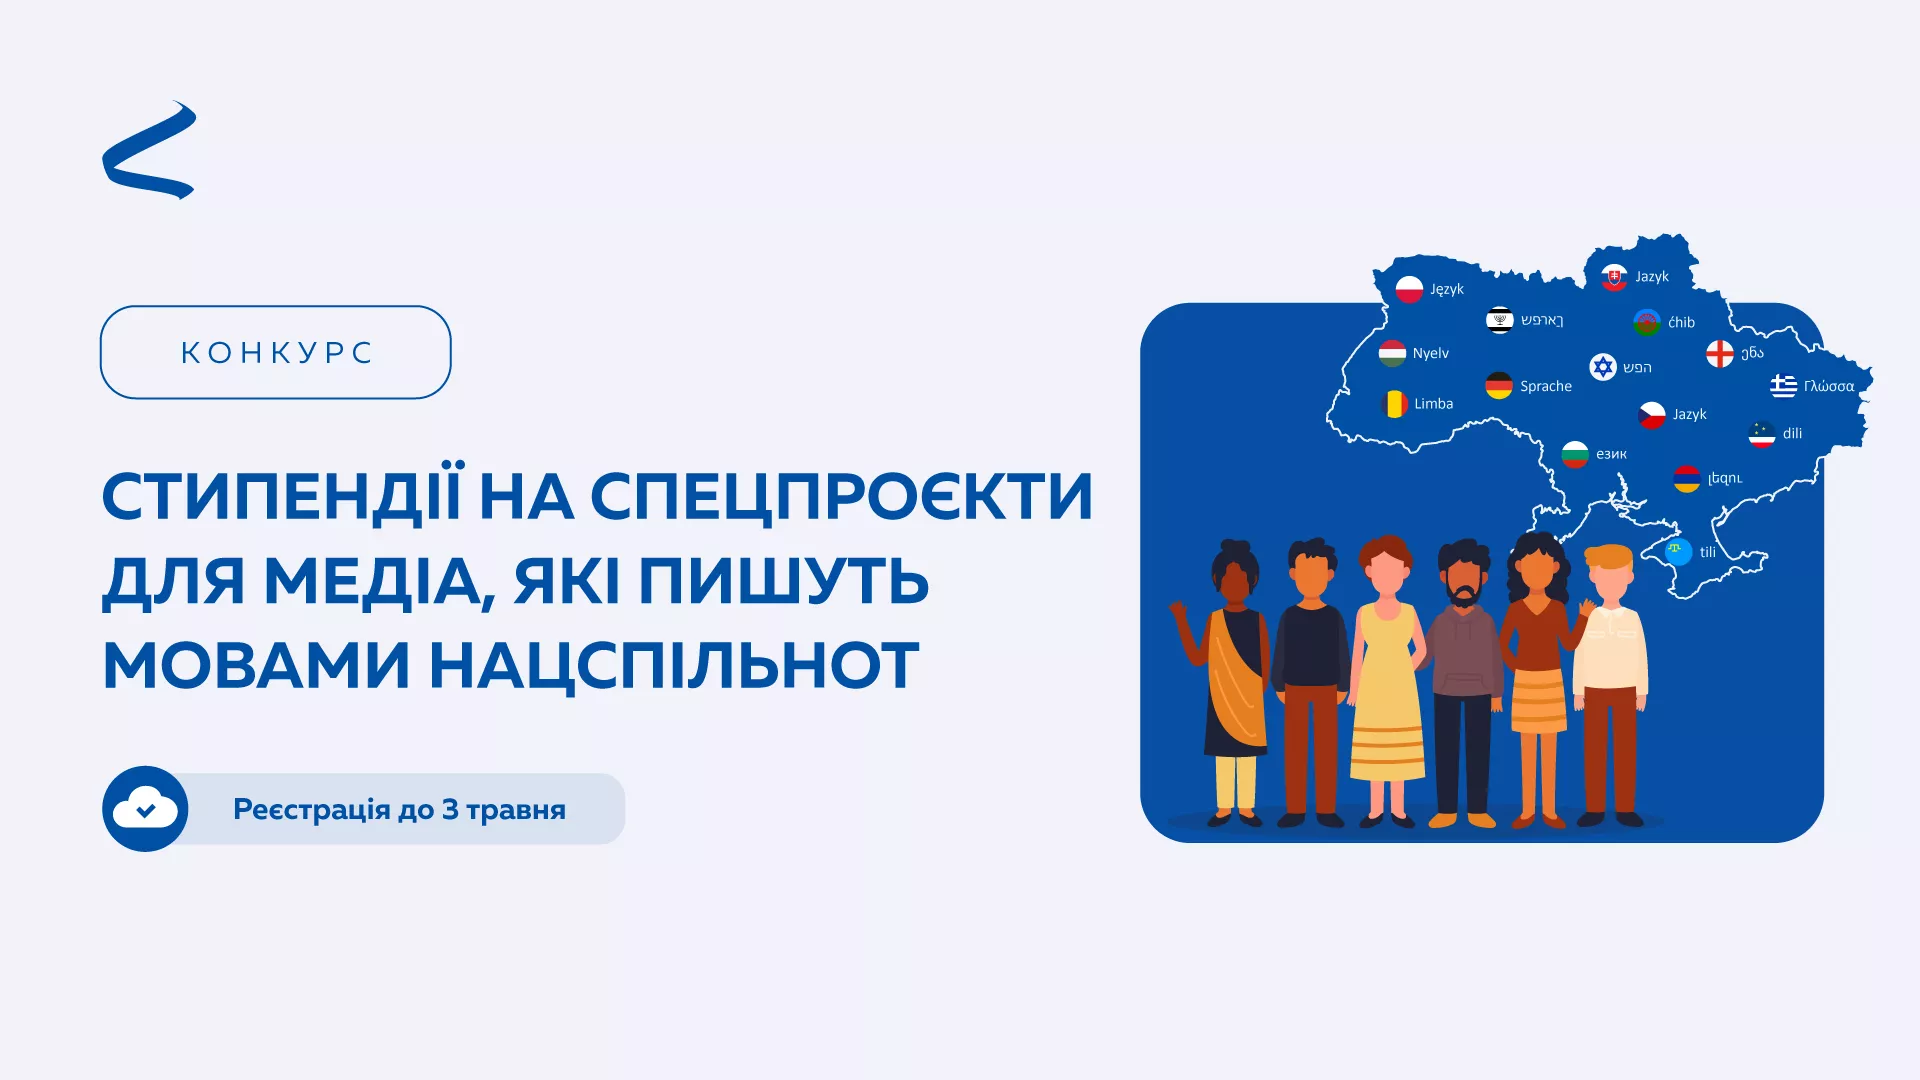 До 3 травня — реєстрація на програму з підтримки медіа, які пишуть мовами національних спільнот від «Інтерньюз-Україна»